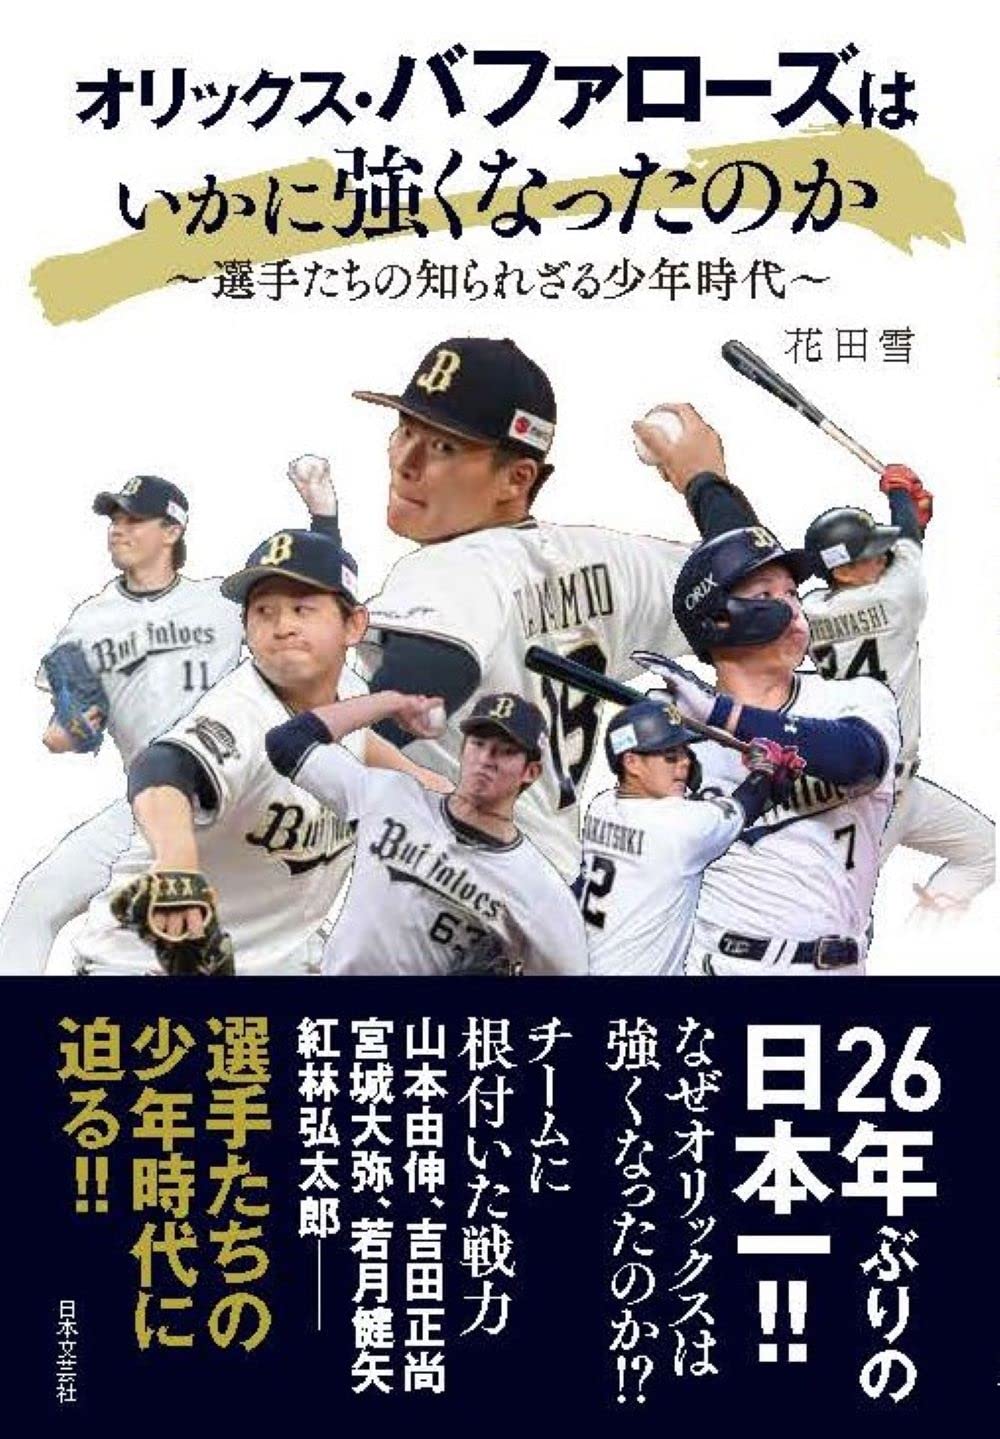 プロ野球日本一 オリックス バファローズ公認 オリックス バファローズはいかに強くなったのか 選手たちの知られざる少年時代 12 23発売決定 株式会社日本文芸社のプレスリリース